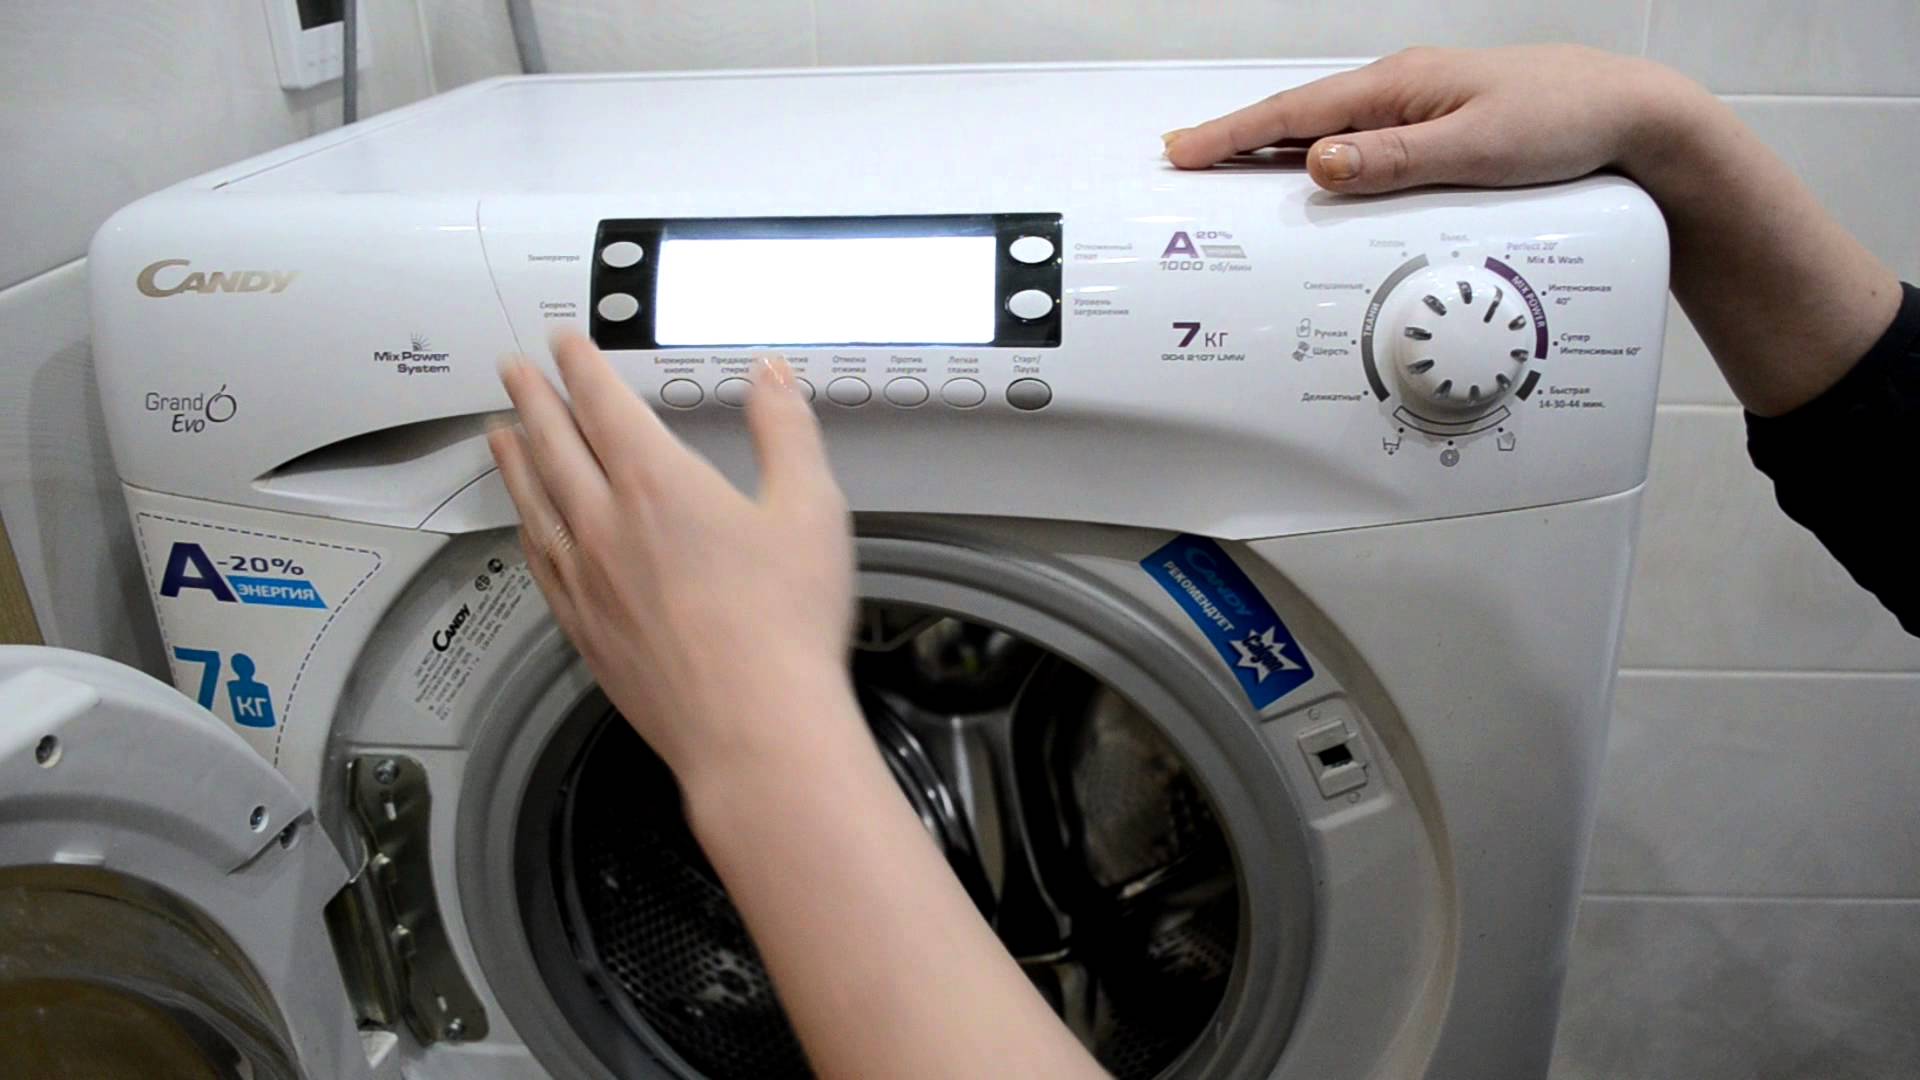 Ремонт стиральных машин Канди в Москве: сервисные центры и частные мастера